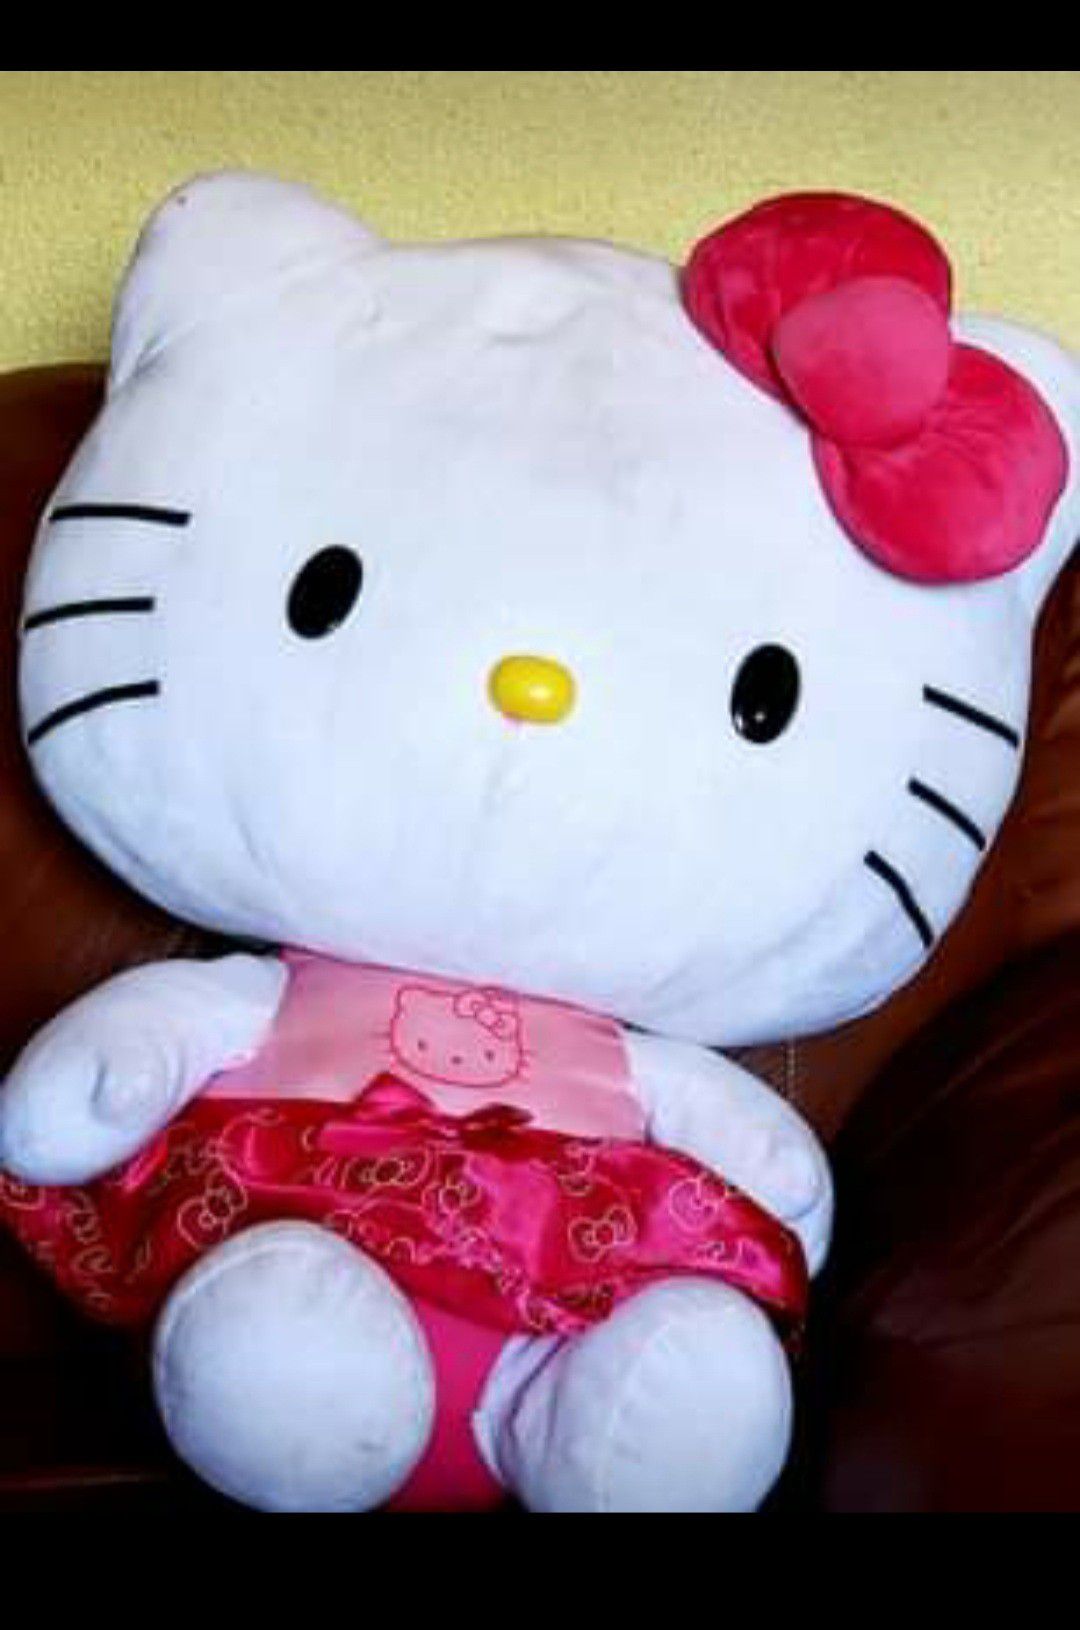 Giant Hello Kitty plush doll